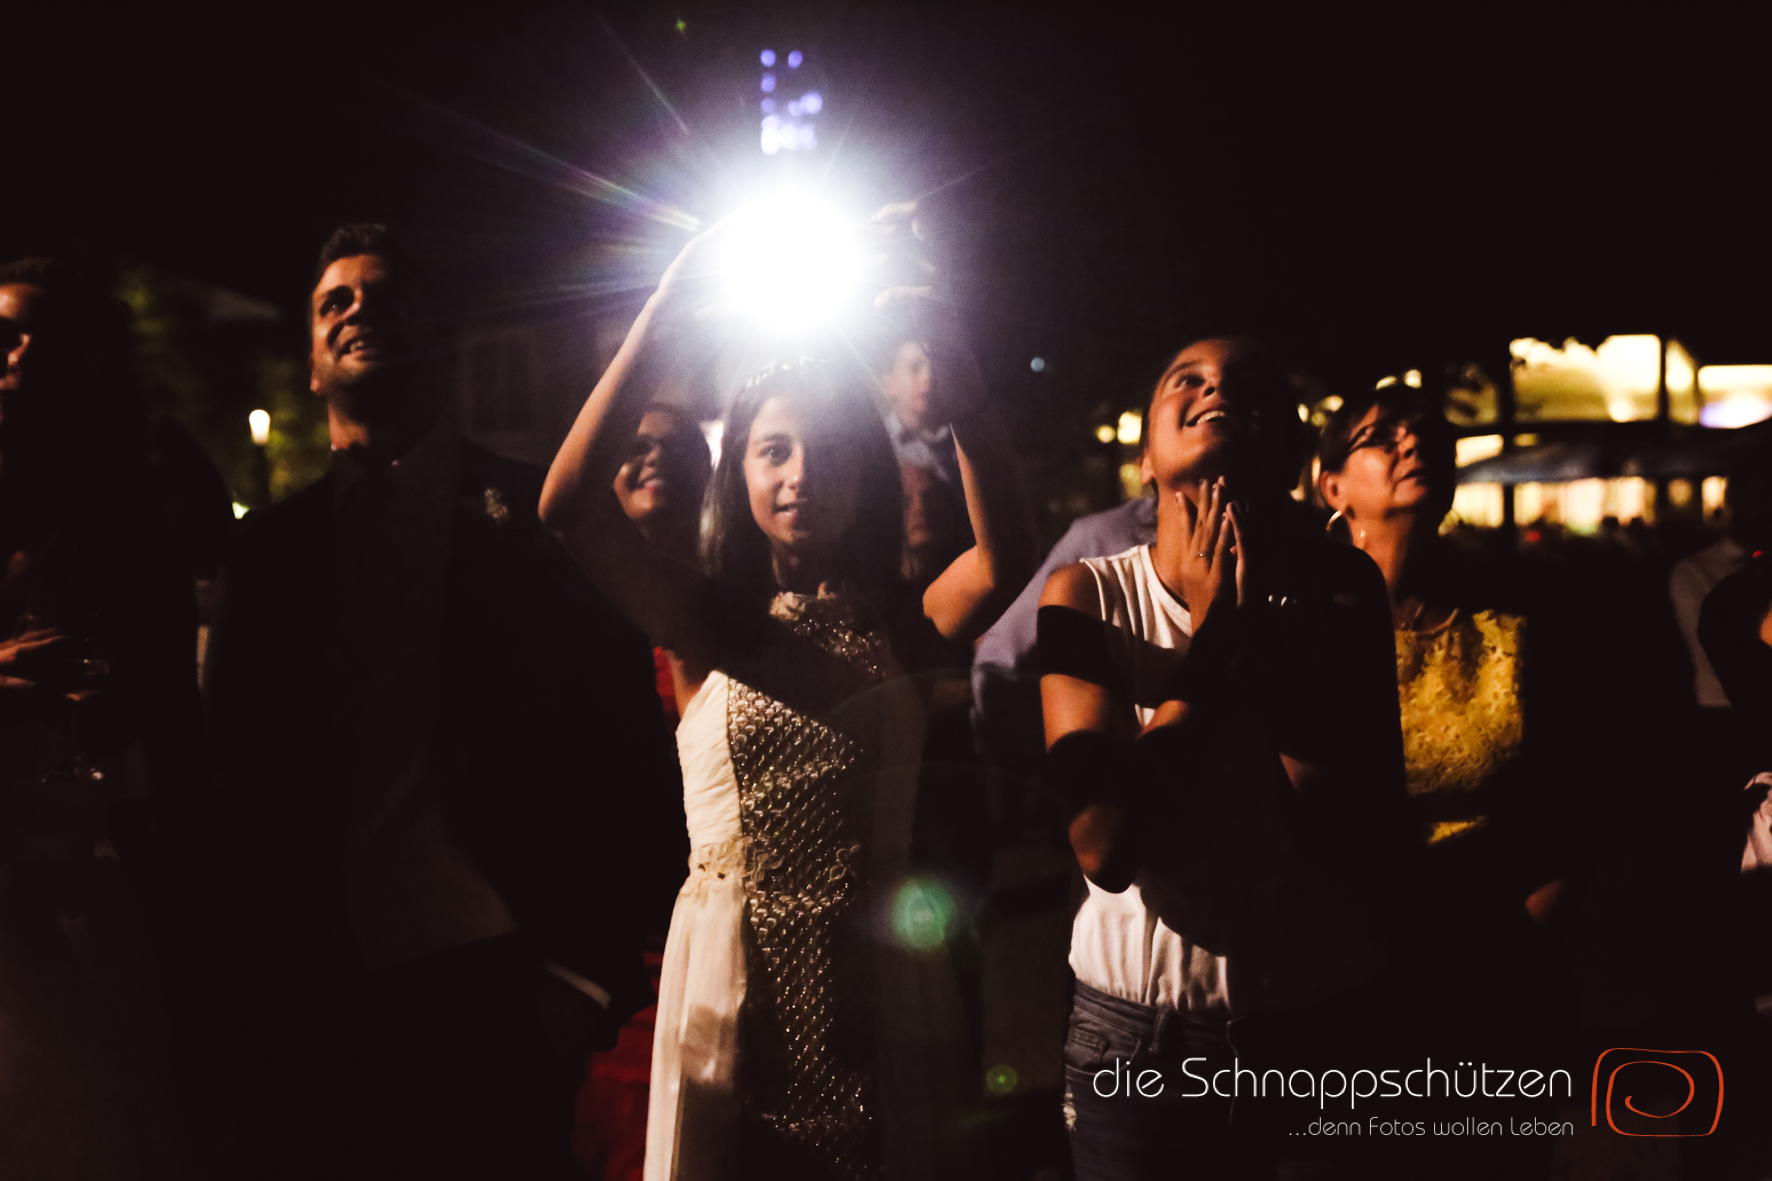 #Hochzeitsreportage #deutsch-italienische Hochzeit #Hochzeitsfotos #Hochzeitsfotografie | (c) die Schnappschützen | www.schnappschuetzen.de